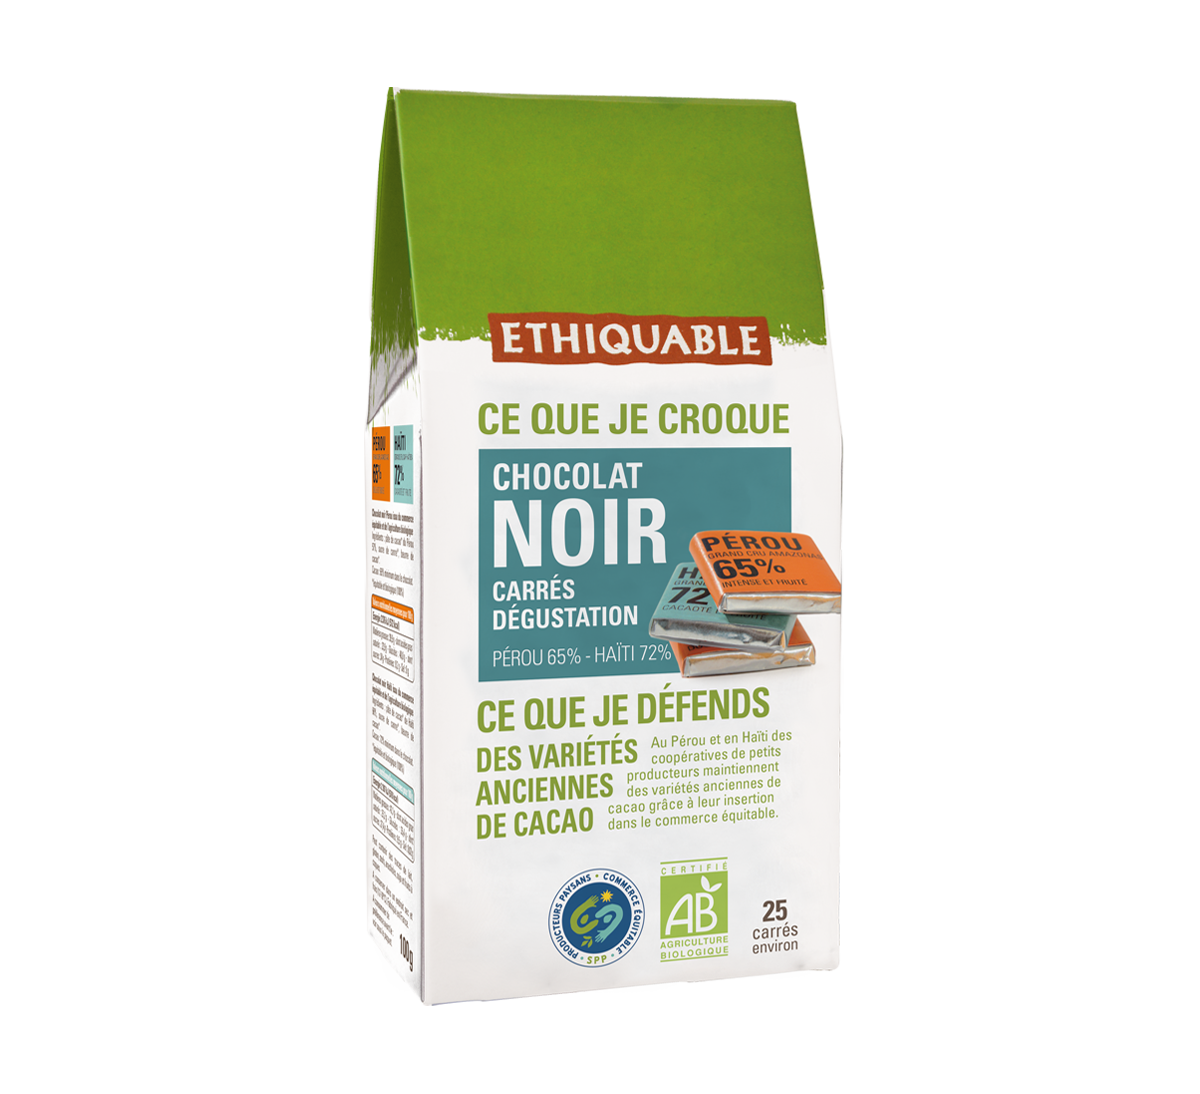 25 Carrés de dégustation chocolat noir bio issu du Commerce Equitable 70% chocolat Pérou et 72% Haiti